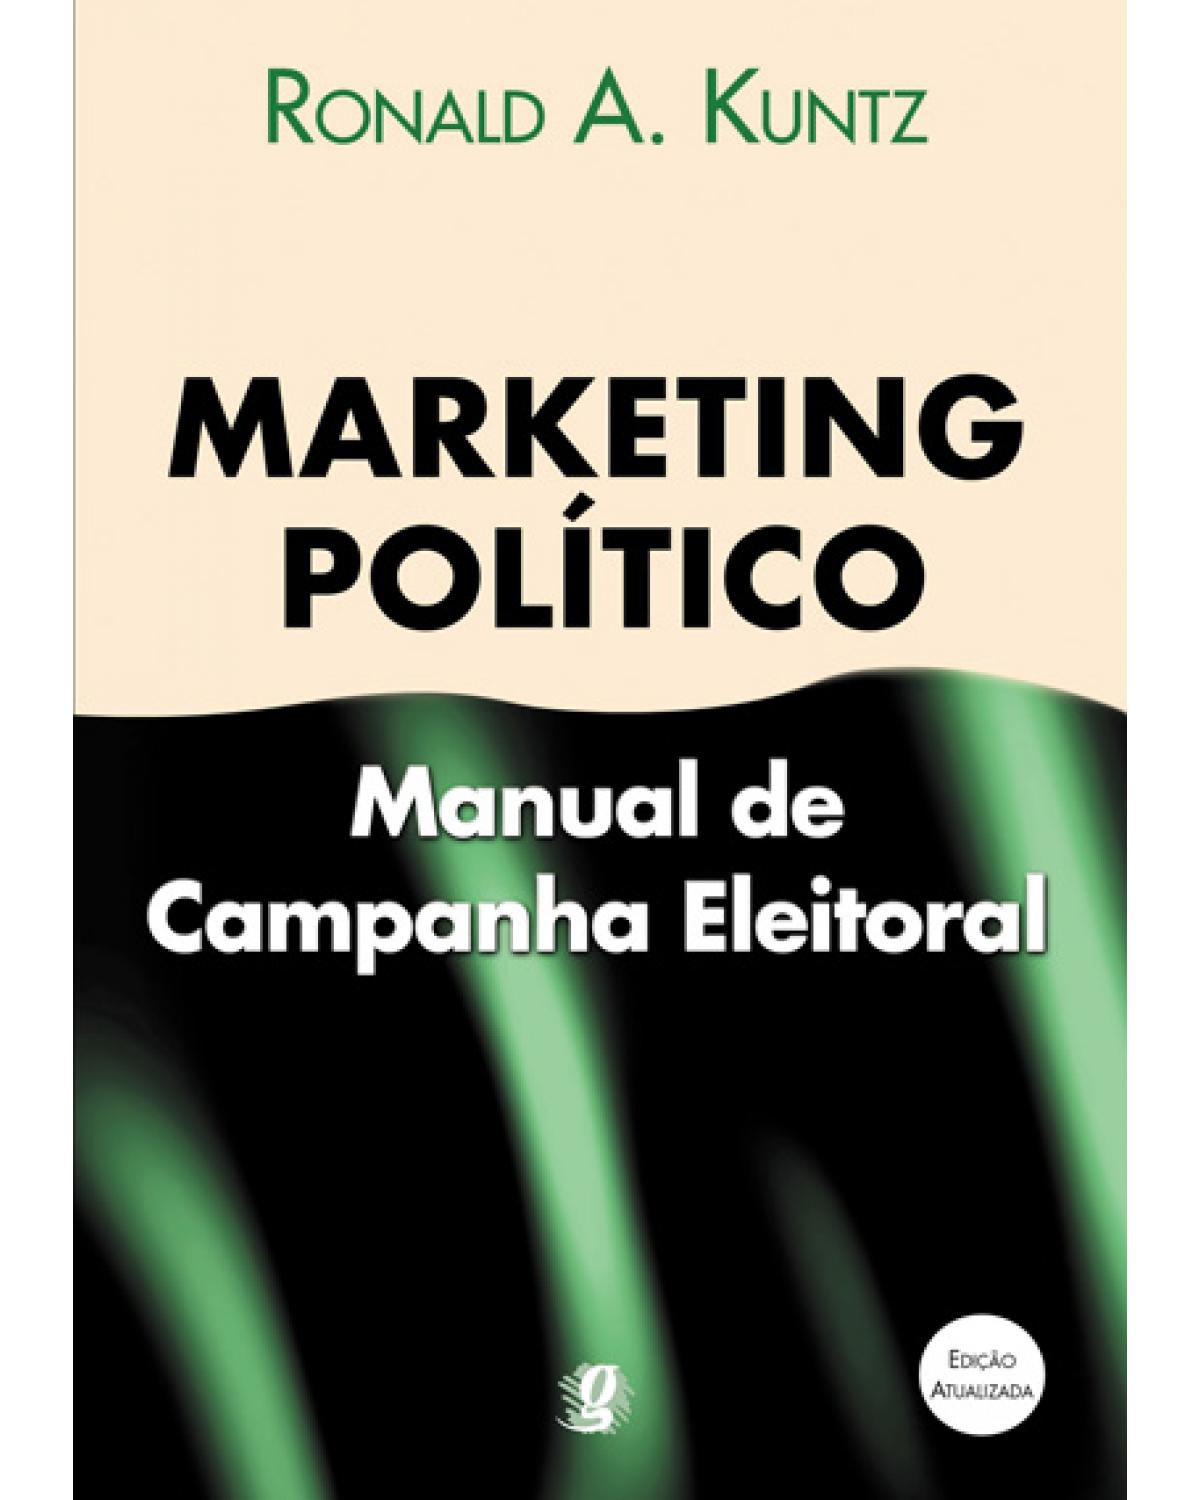 Marketing politico: manual de campanha eleitoral - 11ª Edição | 2006